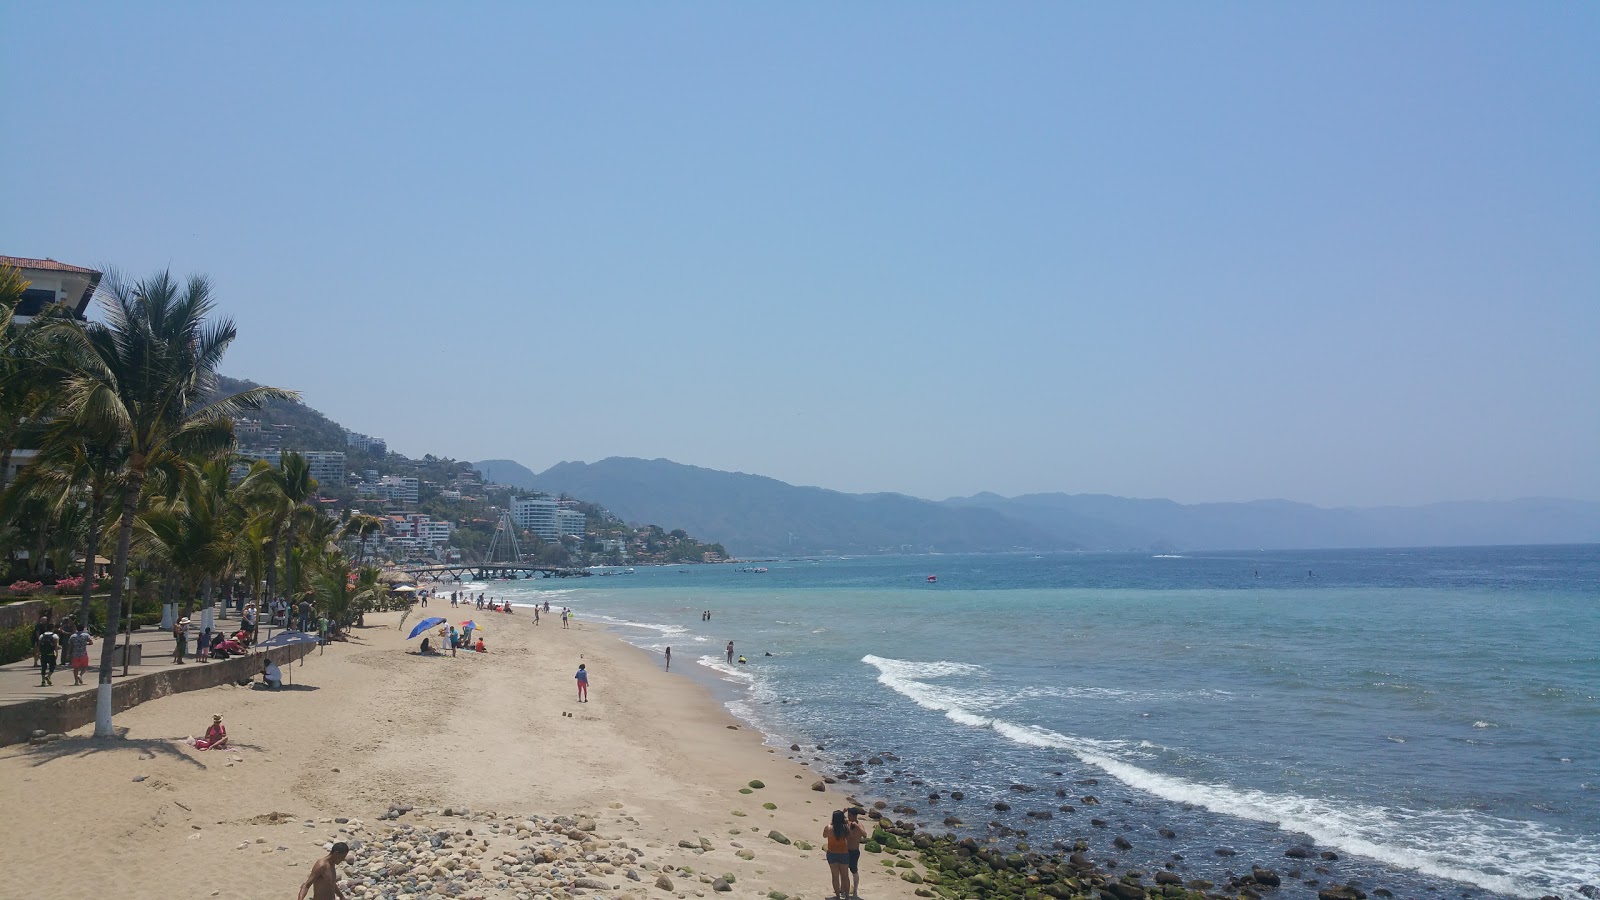 Olas Altas beach'in fotoğrafı ve yerleşim